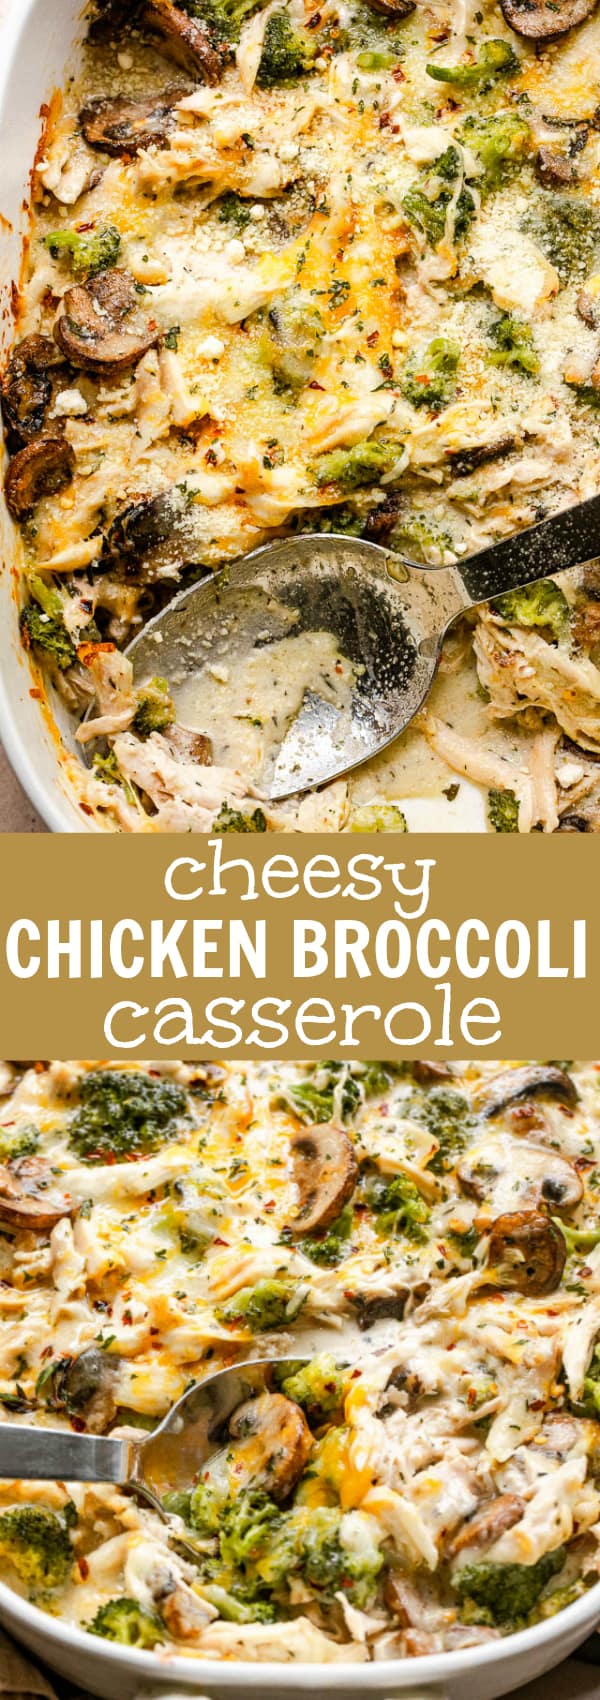 Chicken Broccoli Casserole | Diethood